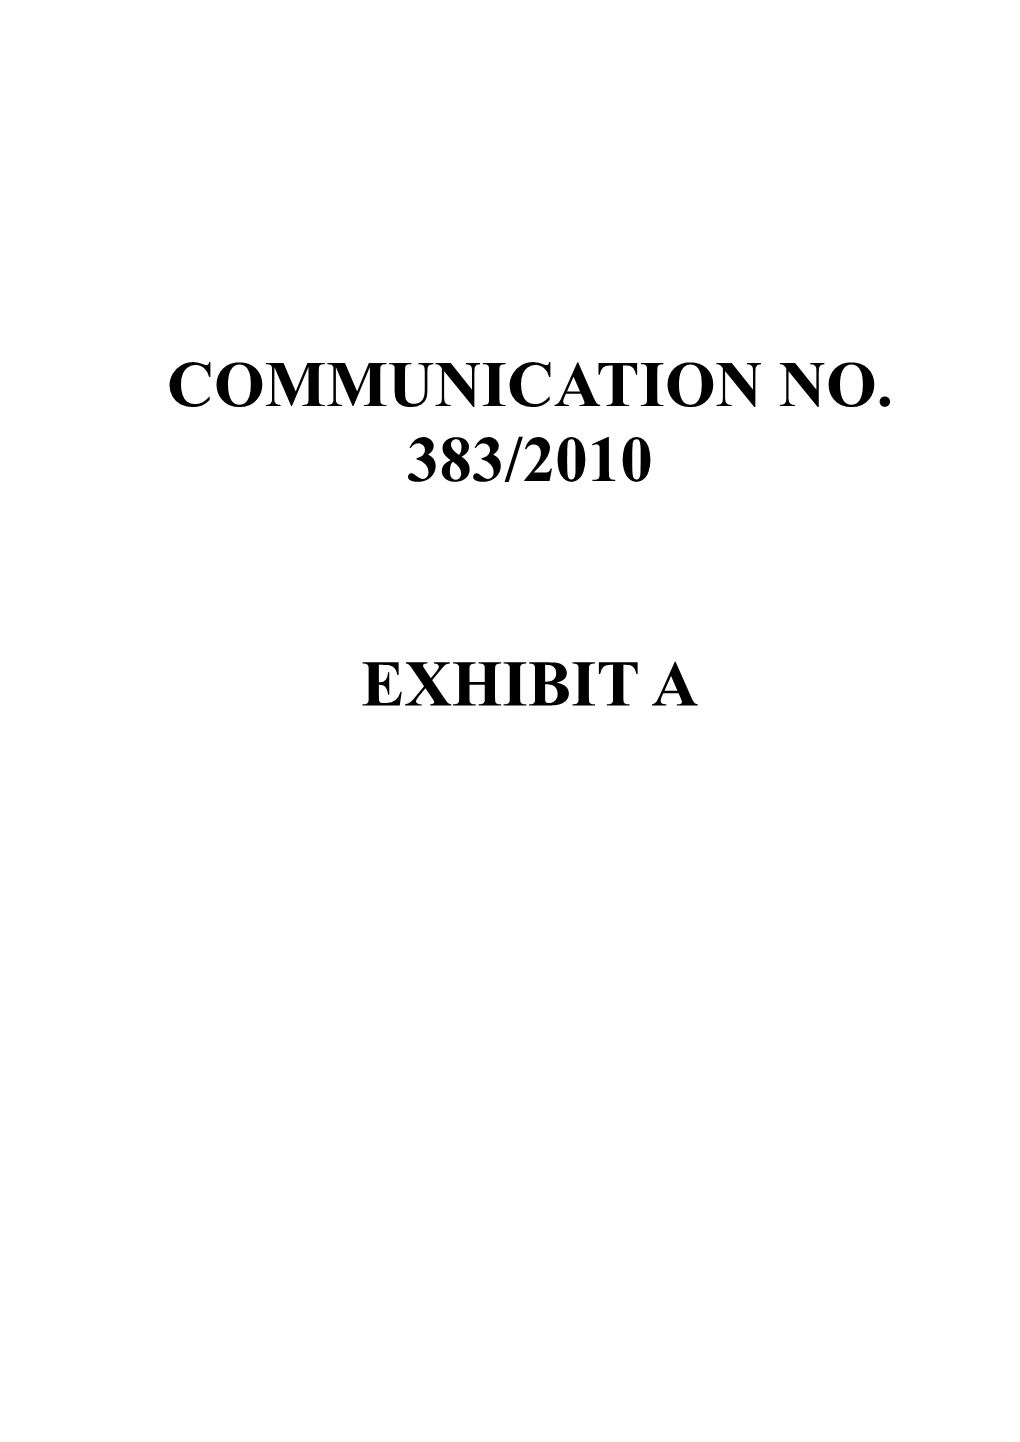 Communication No. 383/2010 Exhibit A